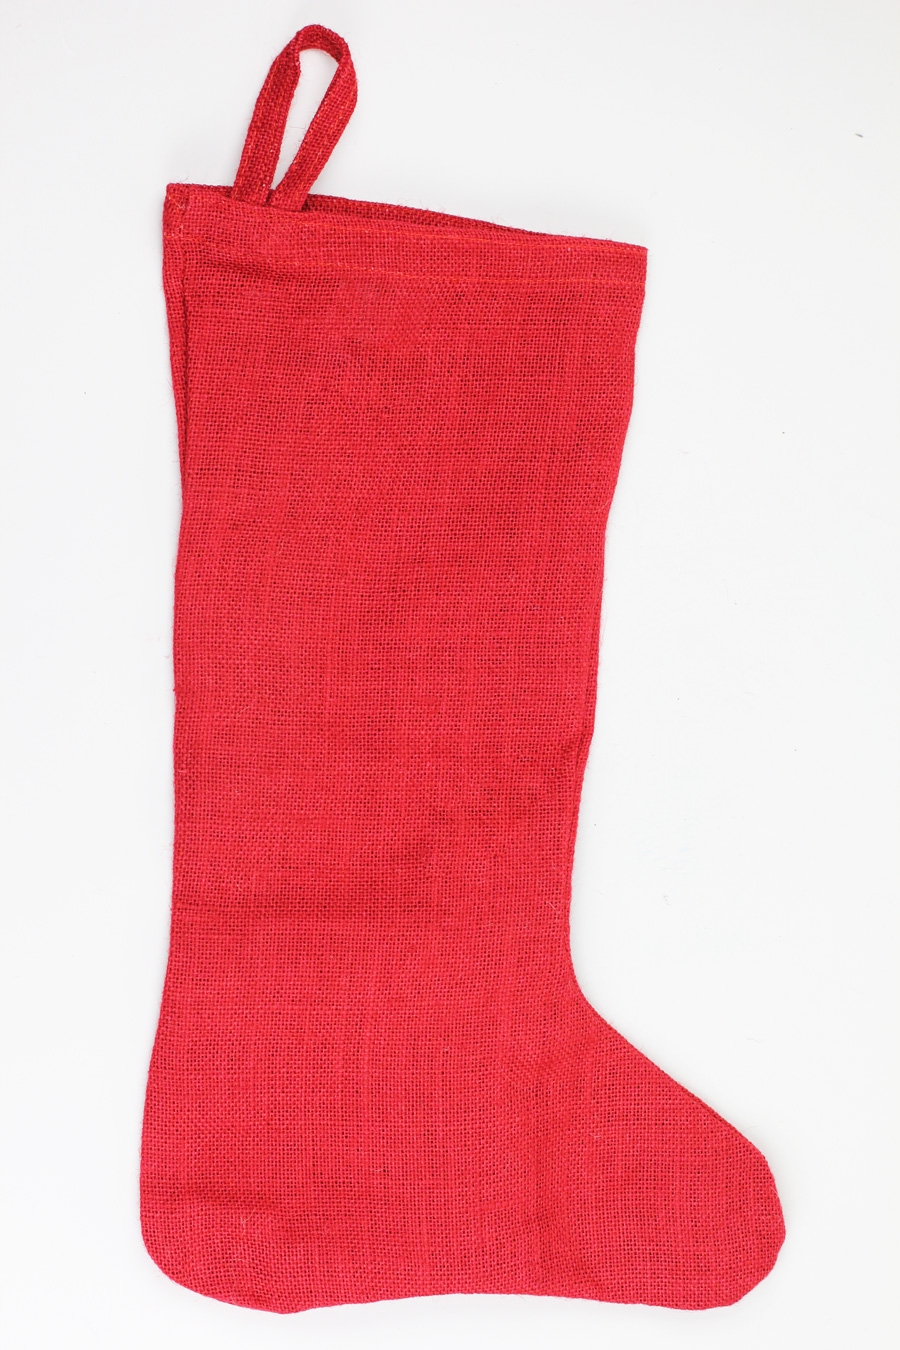 Red Burlap Stocking - 10" x 16"